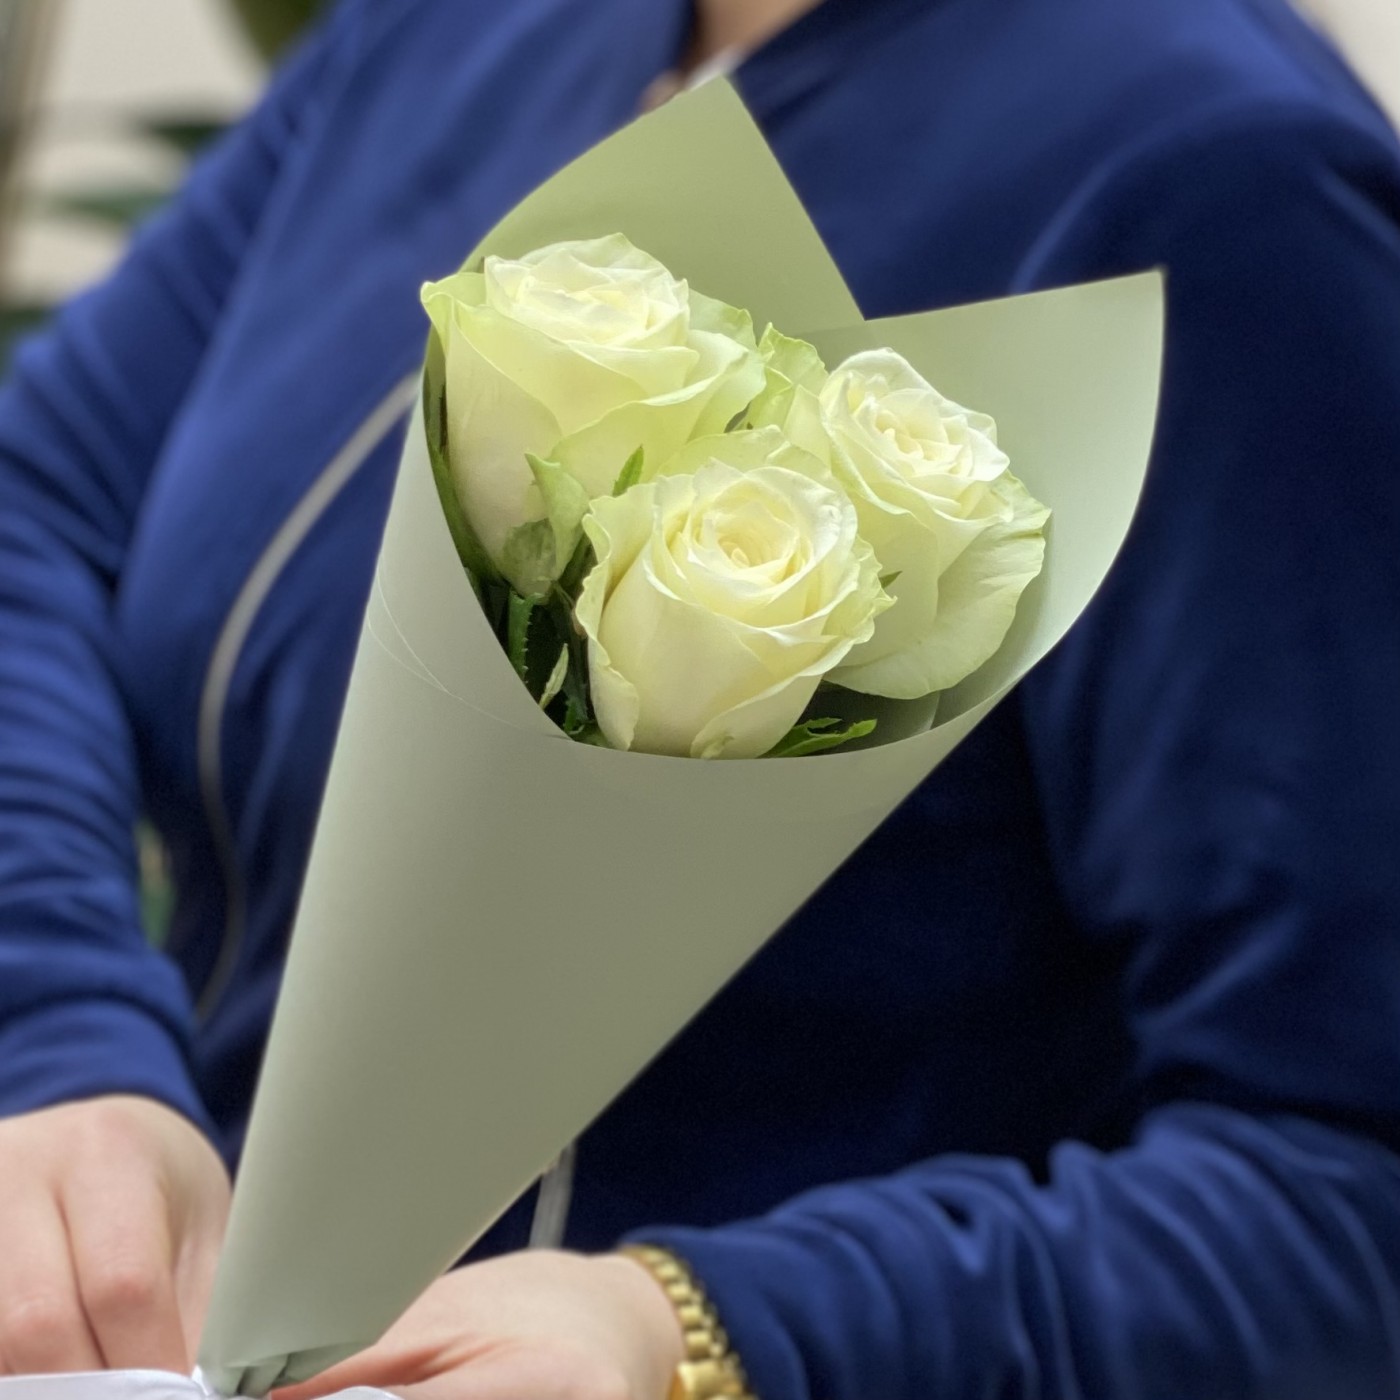 3 белые розы Атена | купить недорого | доставка по Москве и области